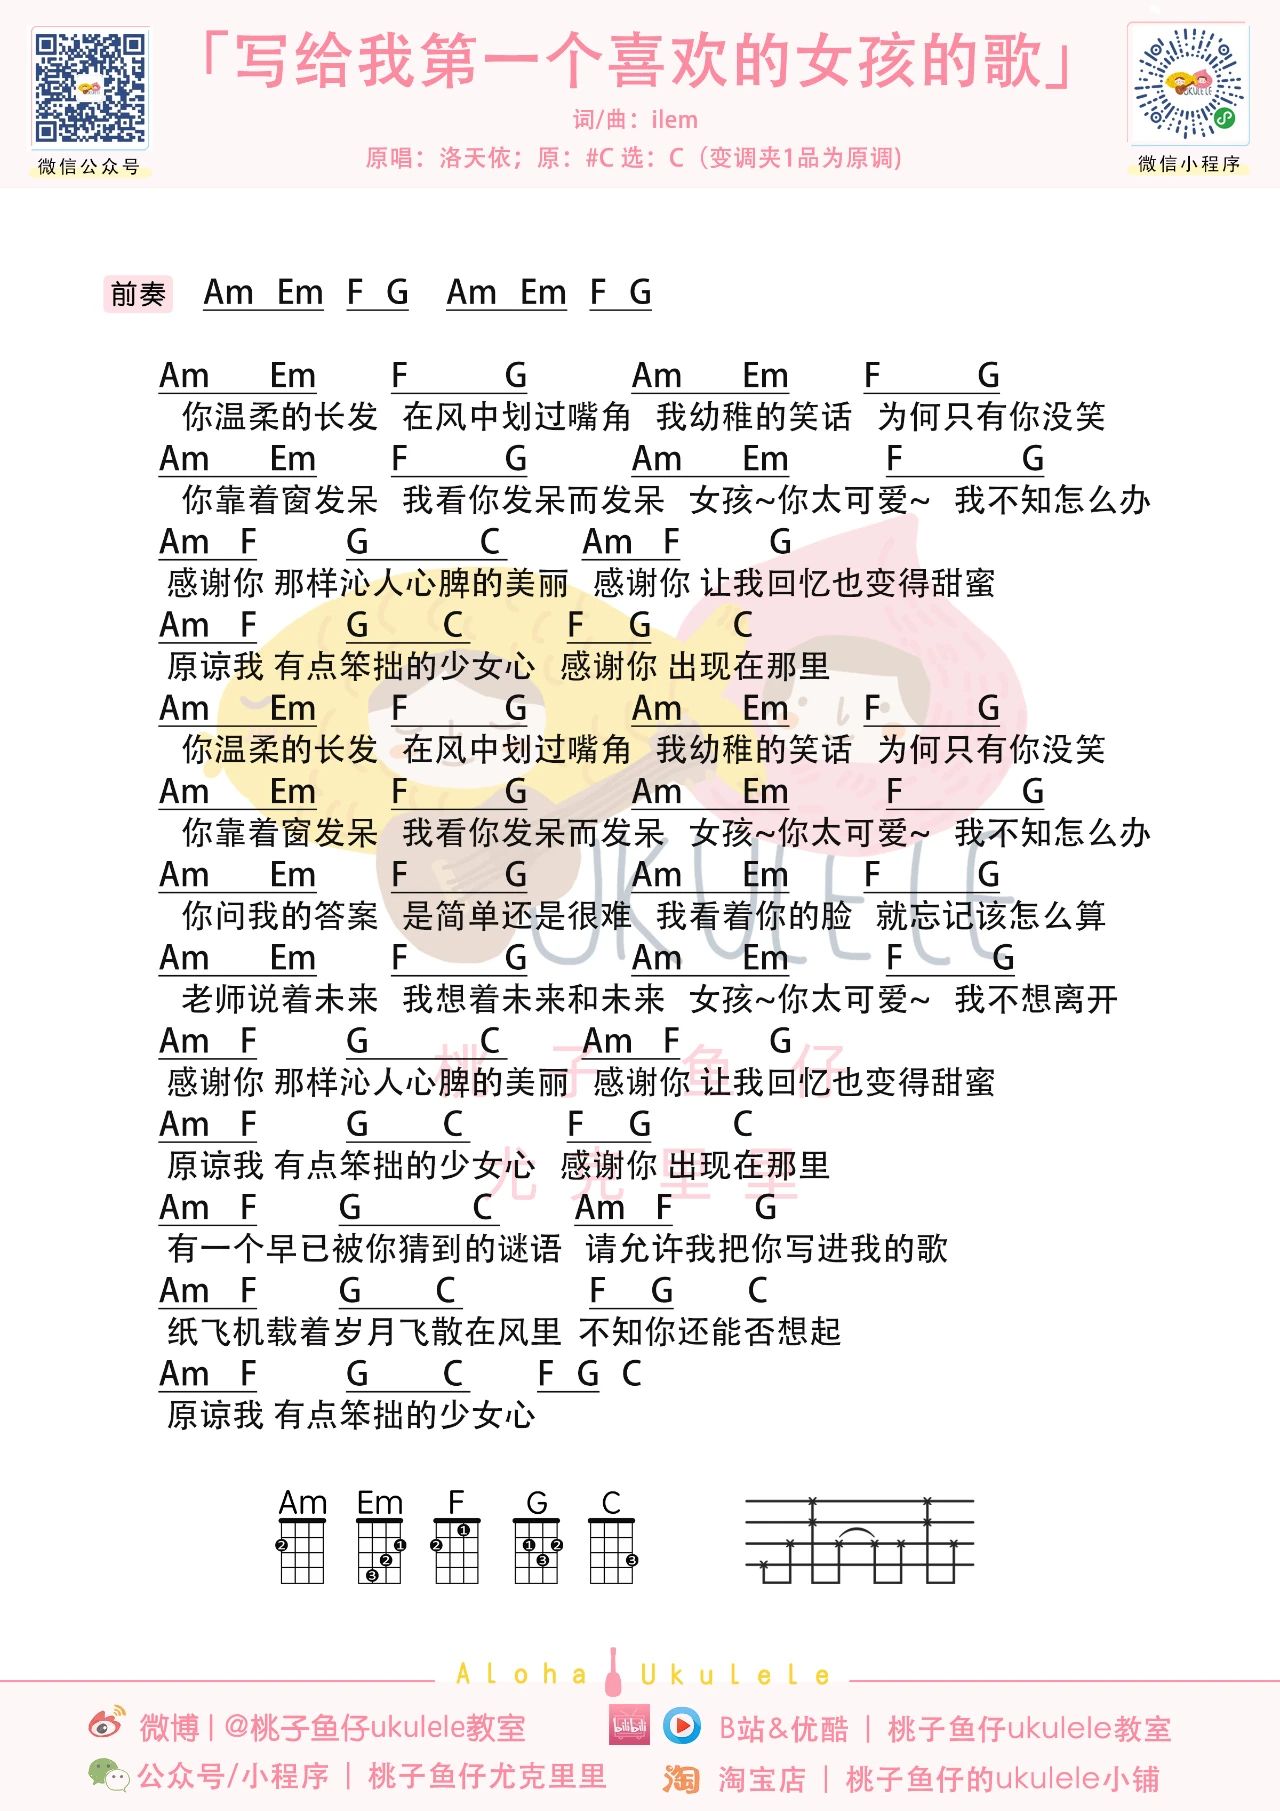 洛天依 - 写给我第一个喜欢的女孩的歌 [弹唱] 吉他谱